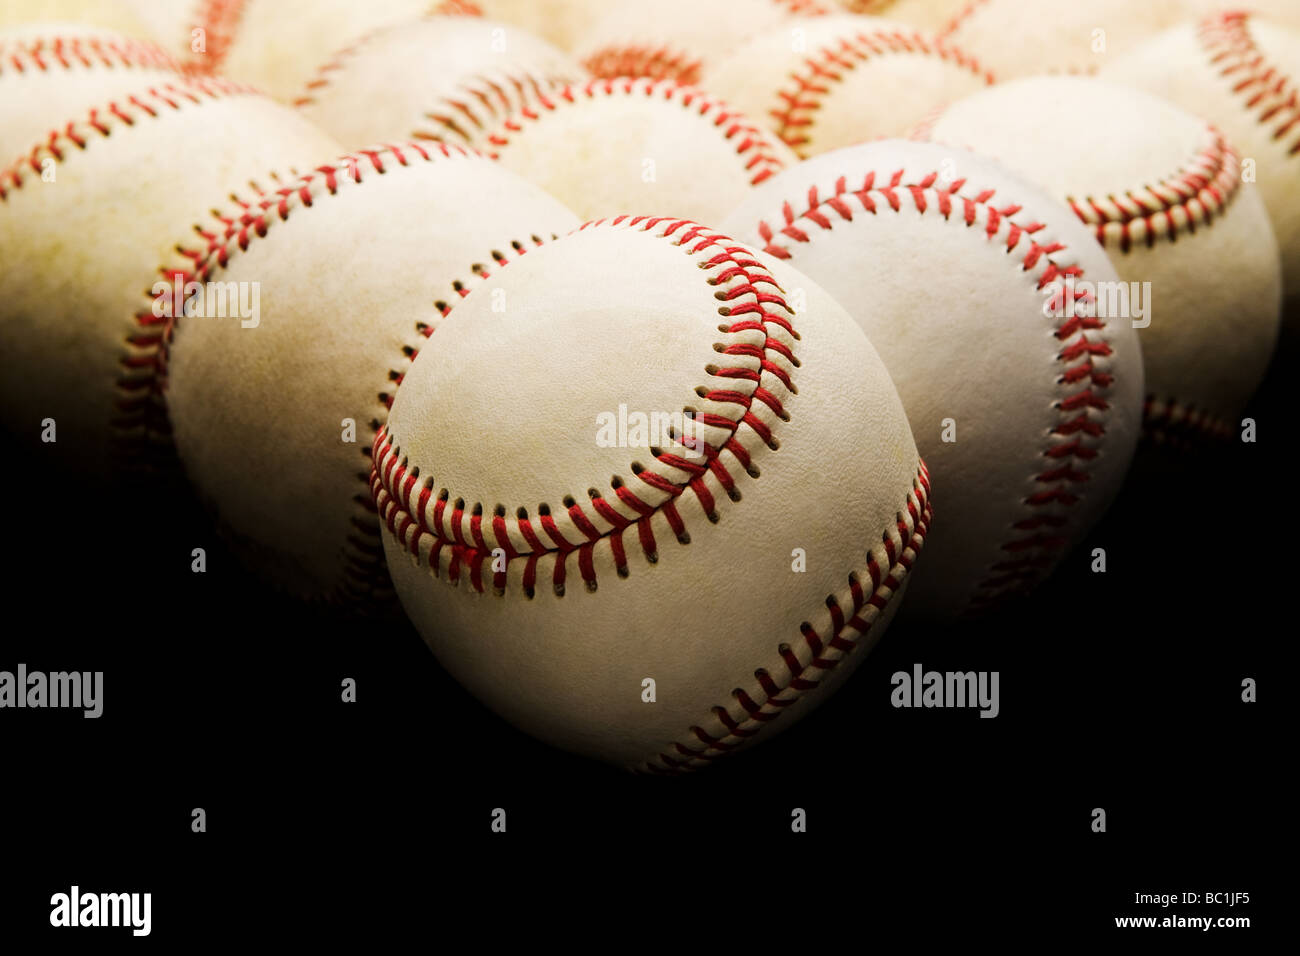 Sollevate vista frontale di un gruppo di impiegati baseballs usurata nella disposizione a triangolo illuminazione sopraelevata e focue selettiva in primo piano Foto Stock